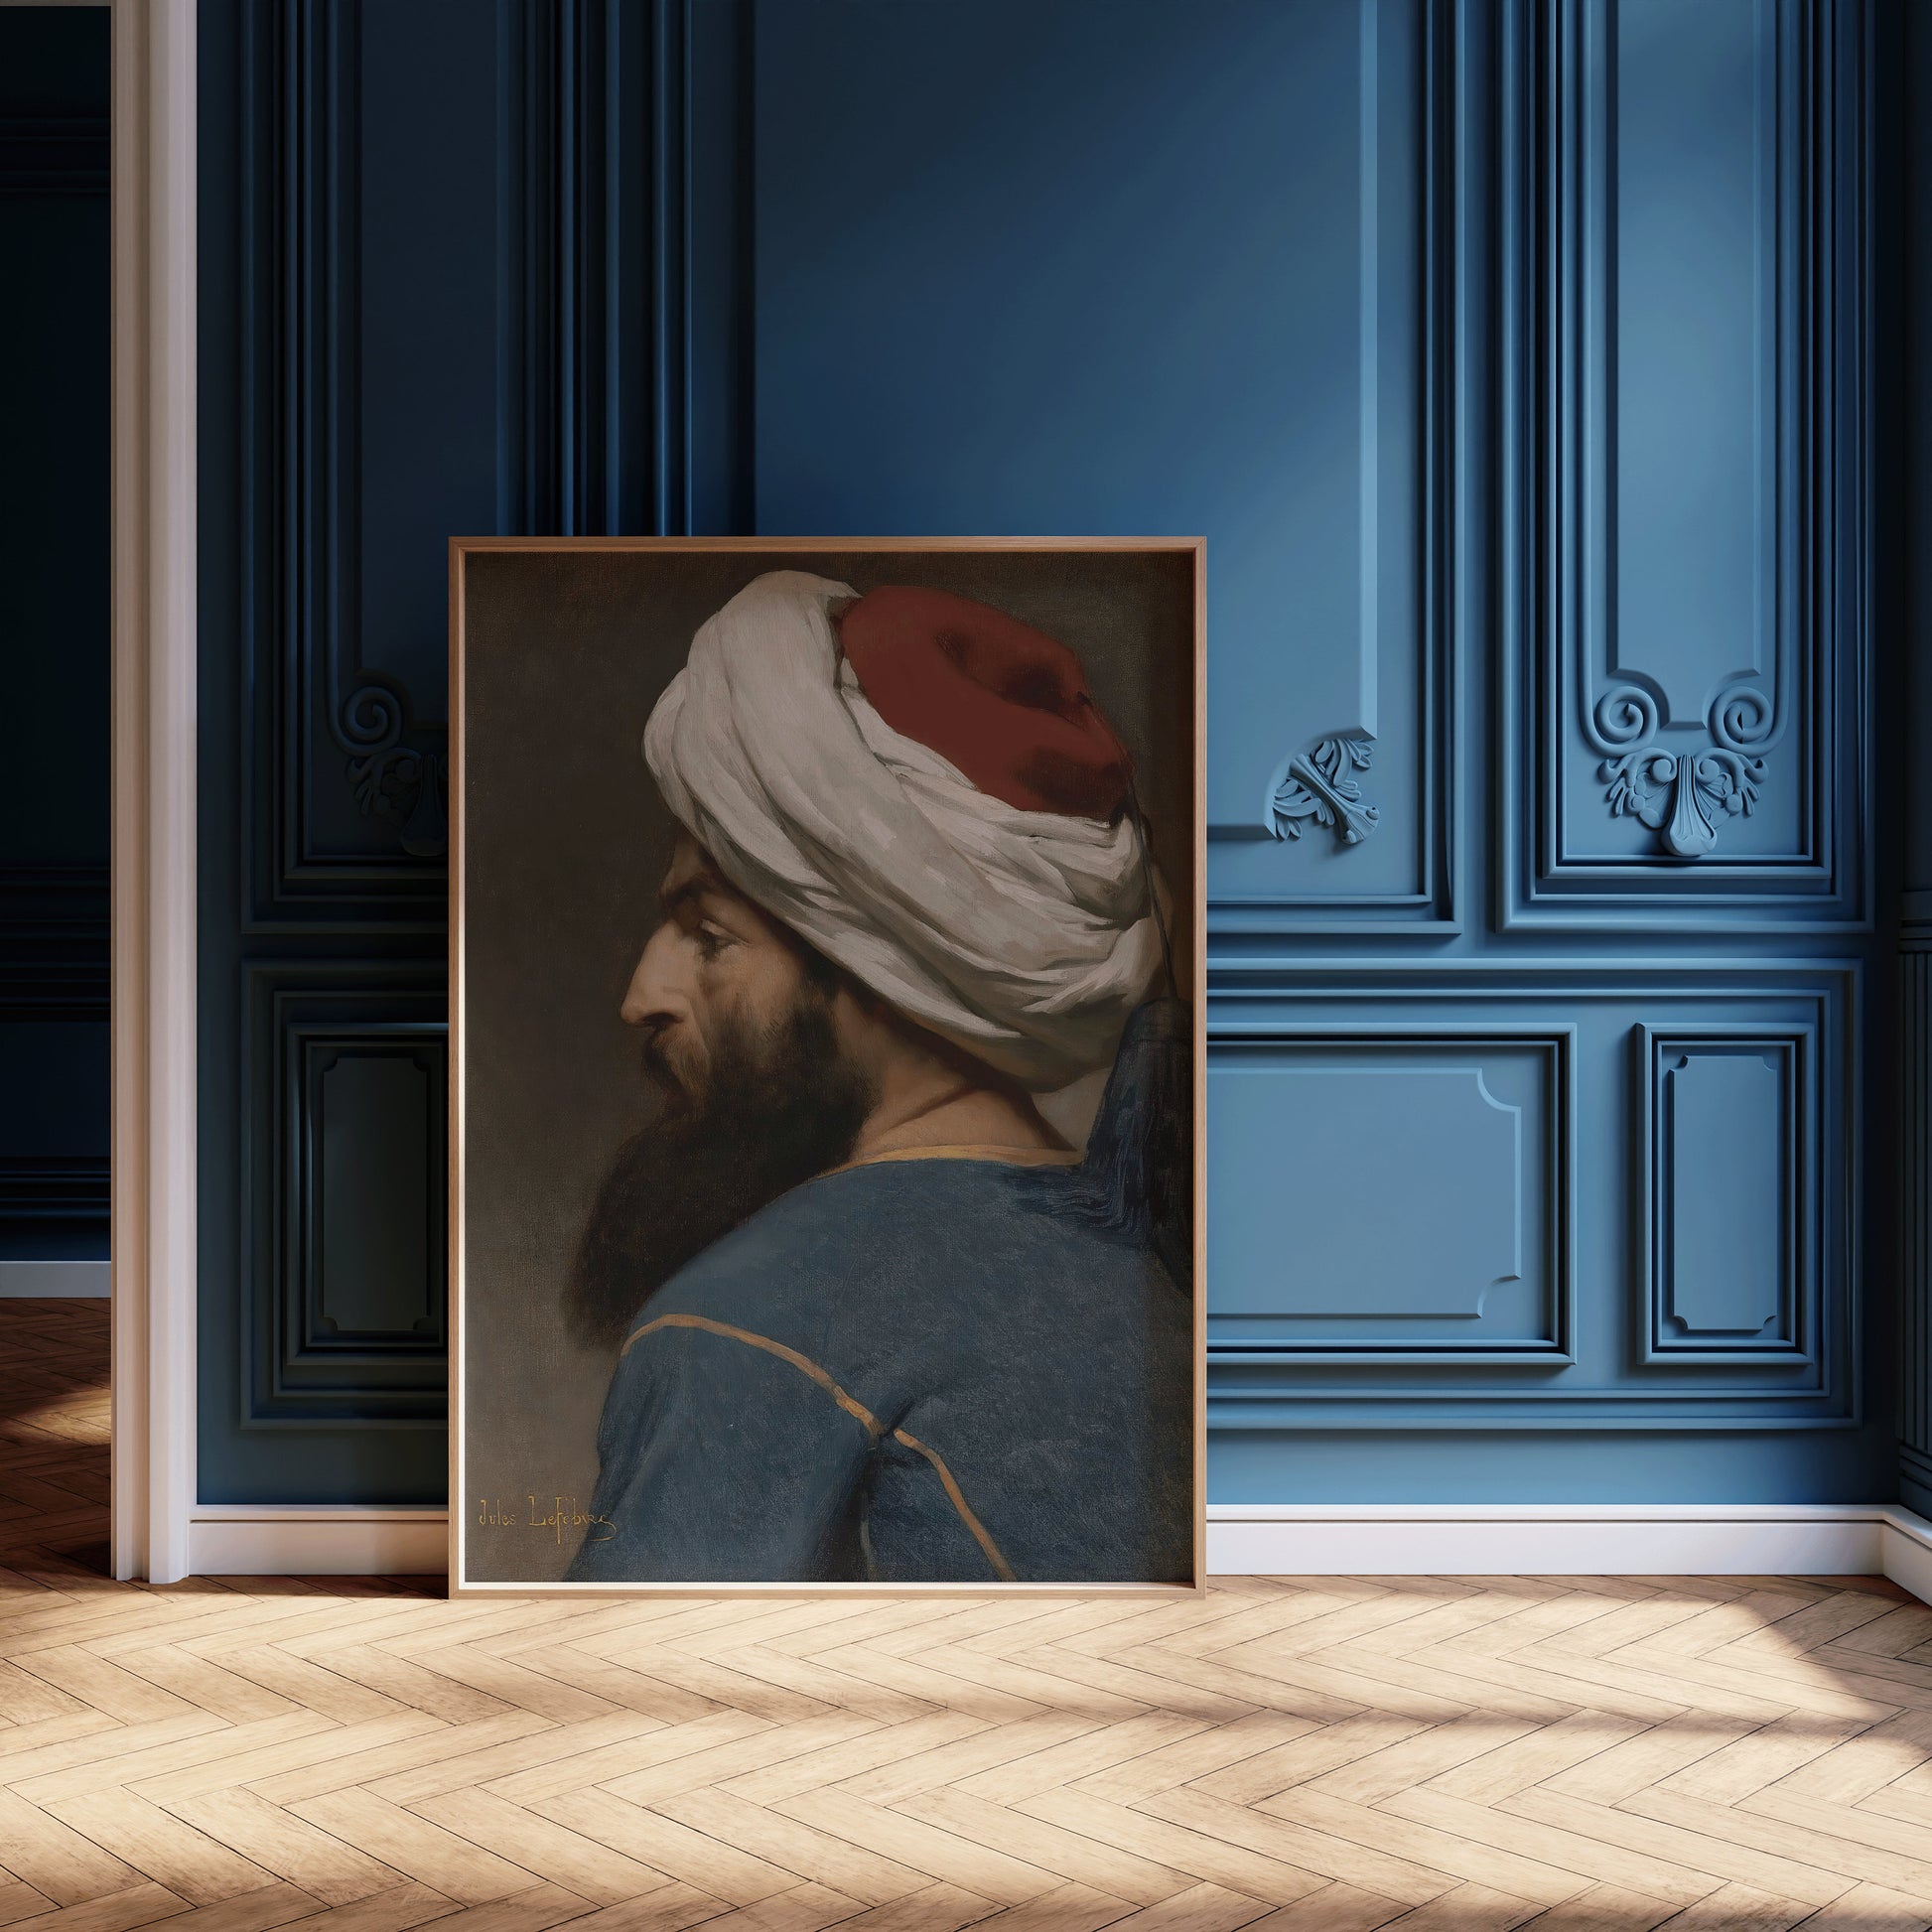 Jules Joseph Lefebvre - Portrait of an Ottoman | Orientalist Art (available framed or unframed)